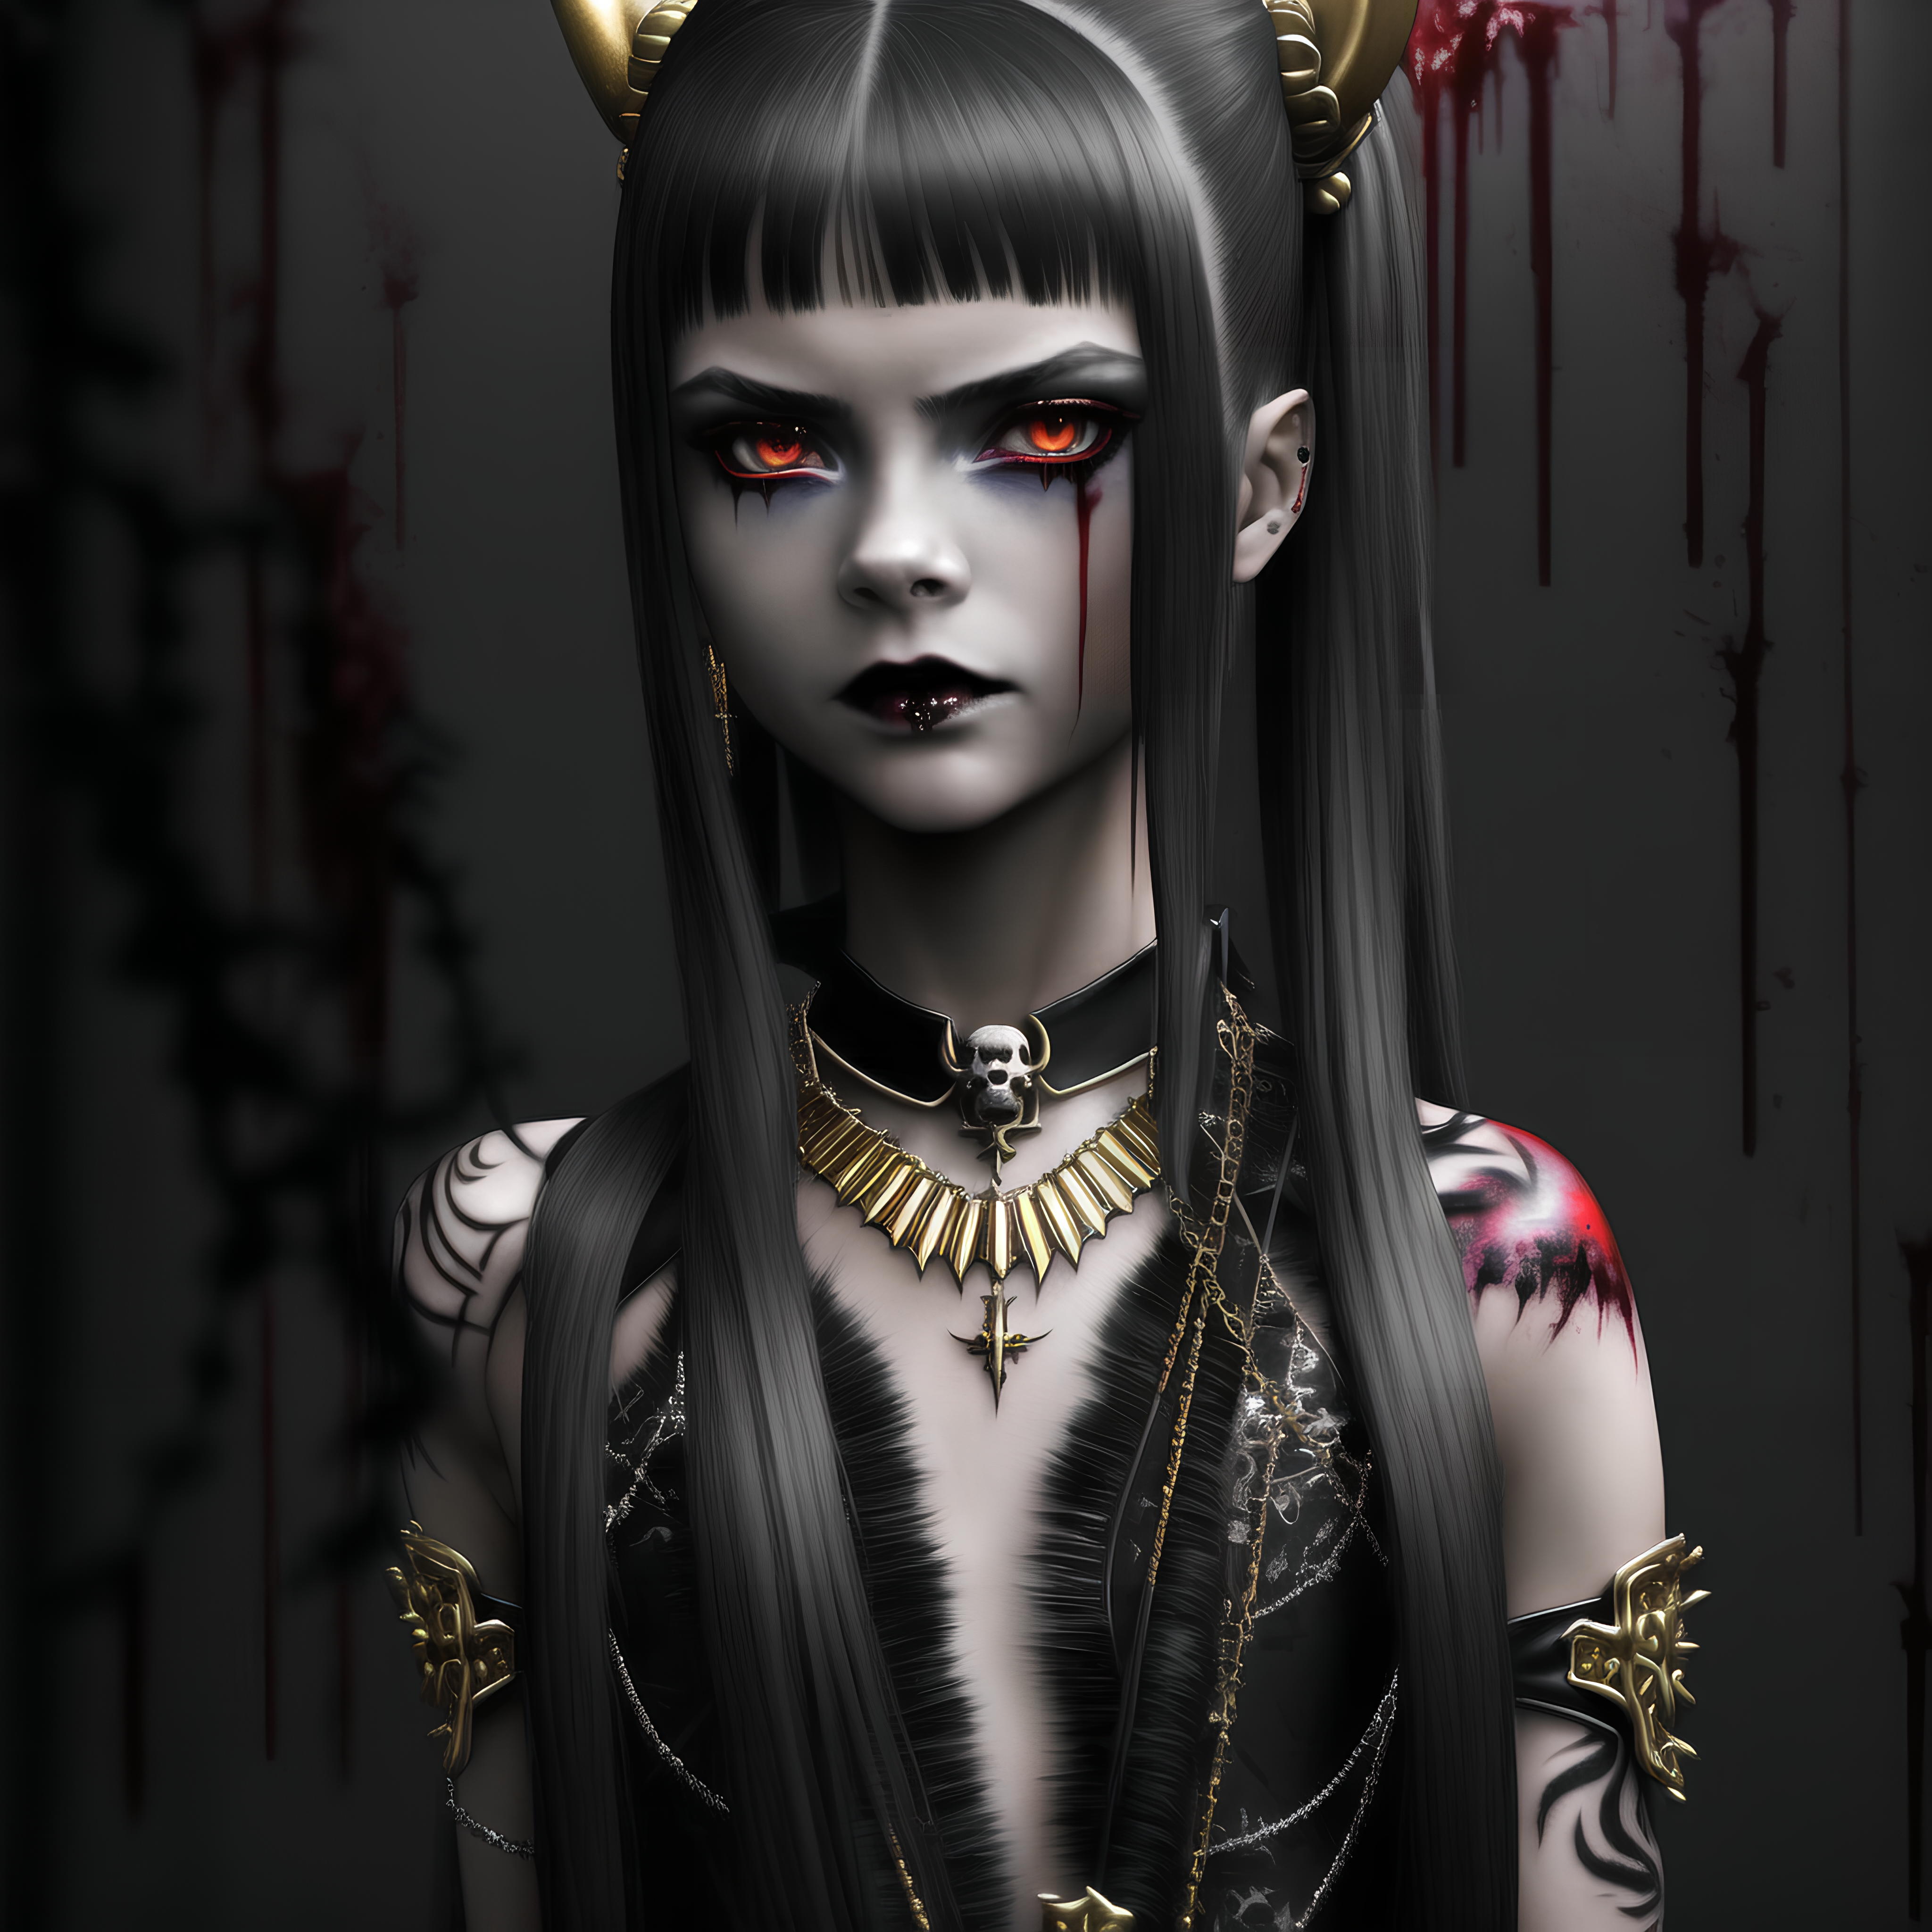 Vampire girl (18) by PunkerLazar on DeviantArt